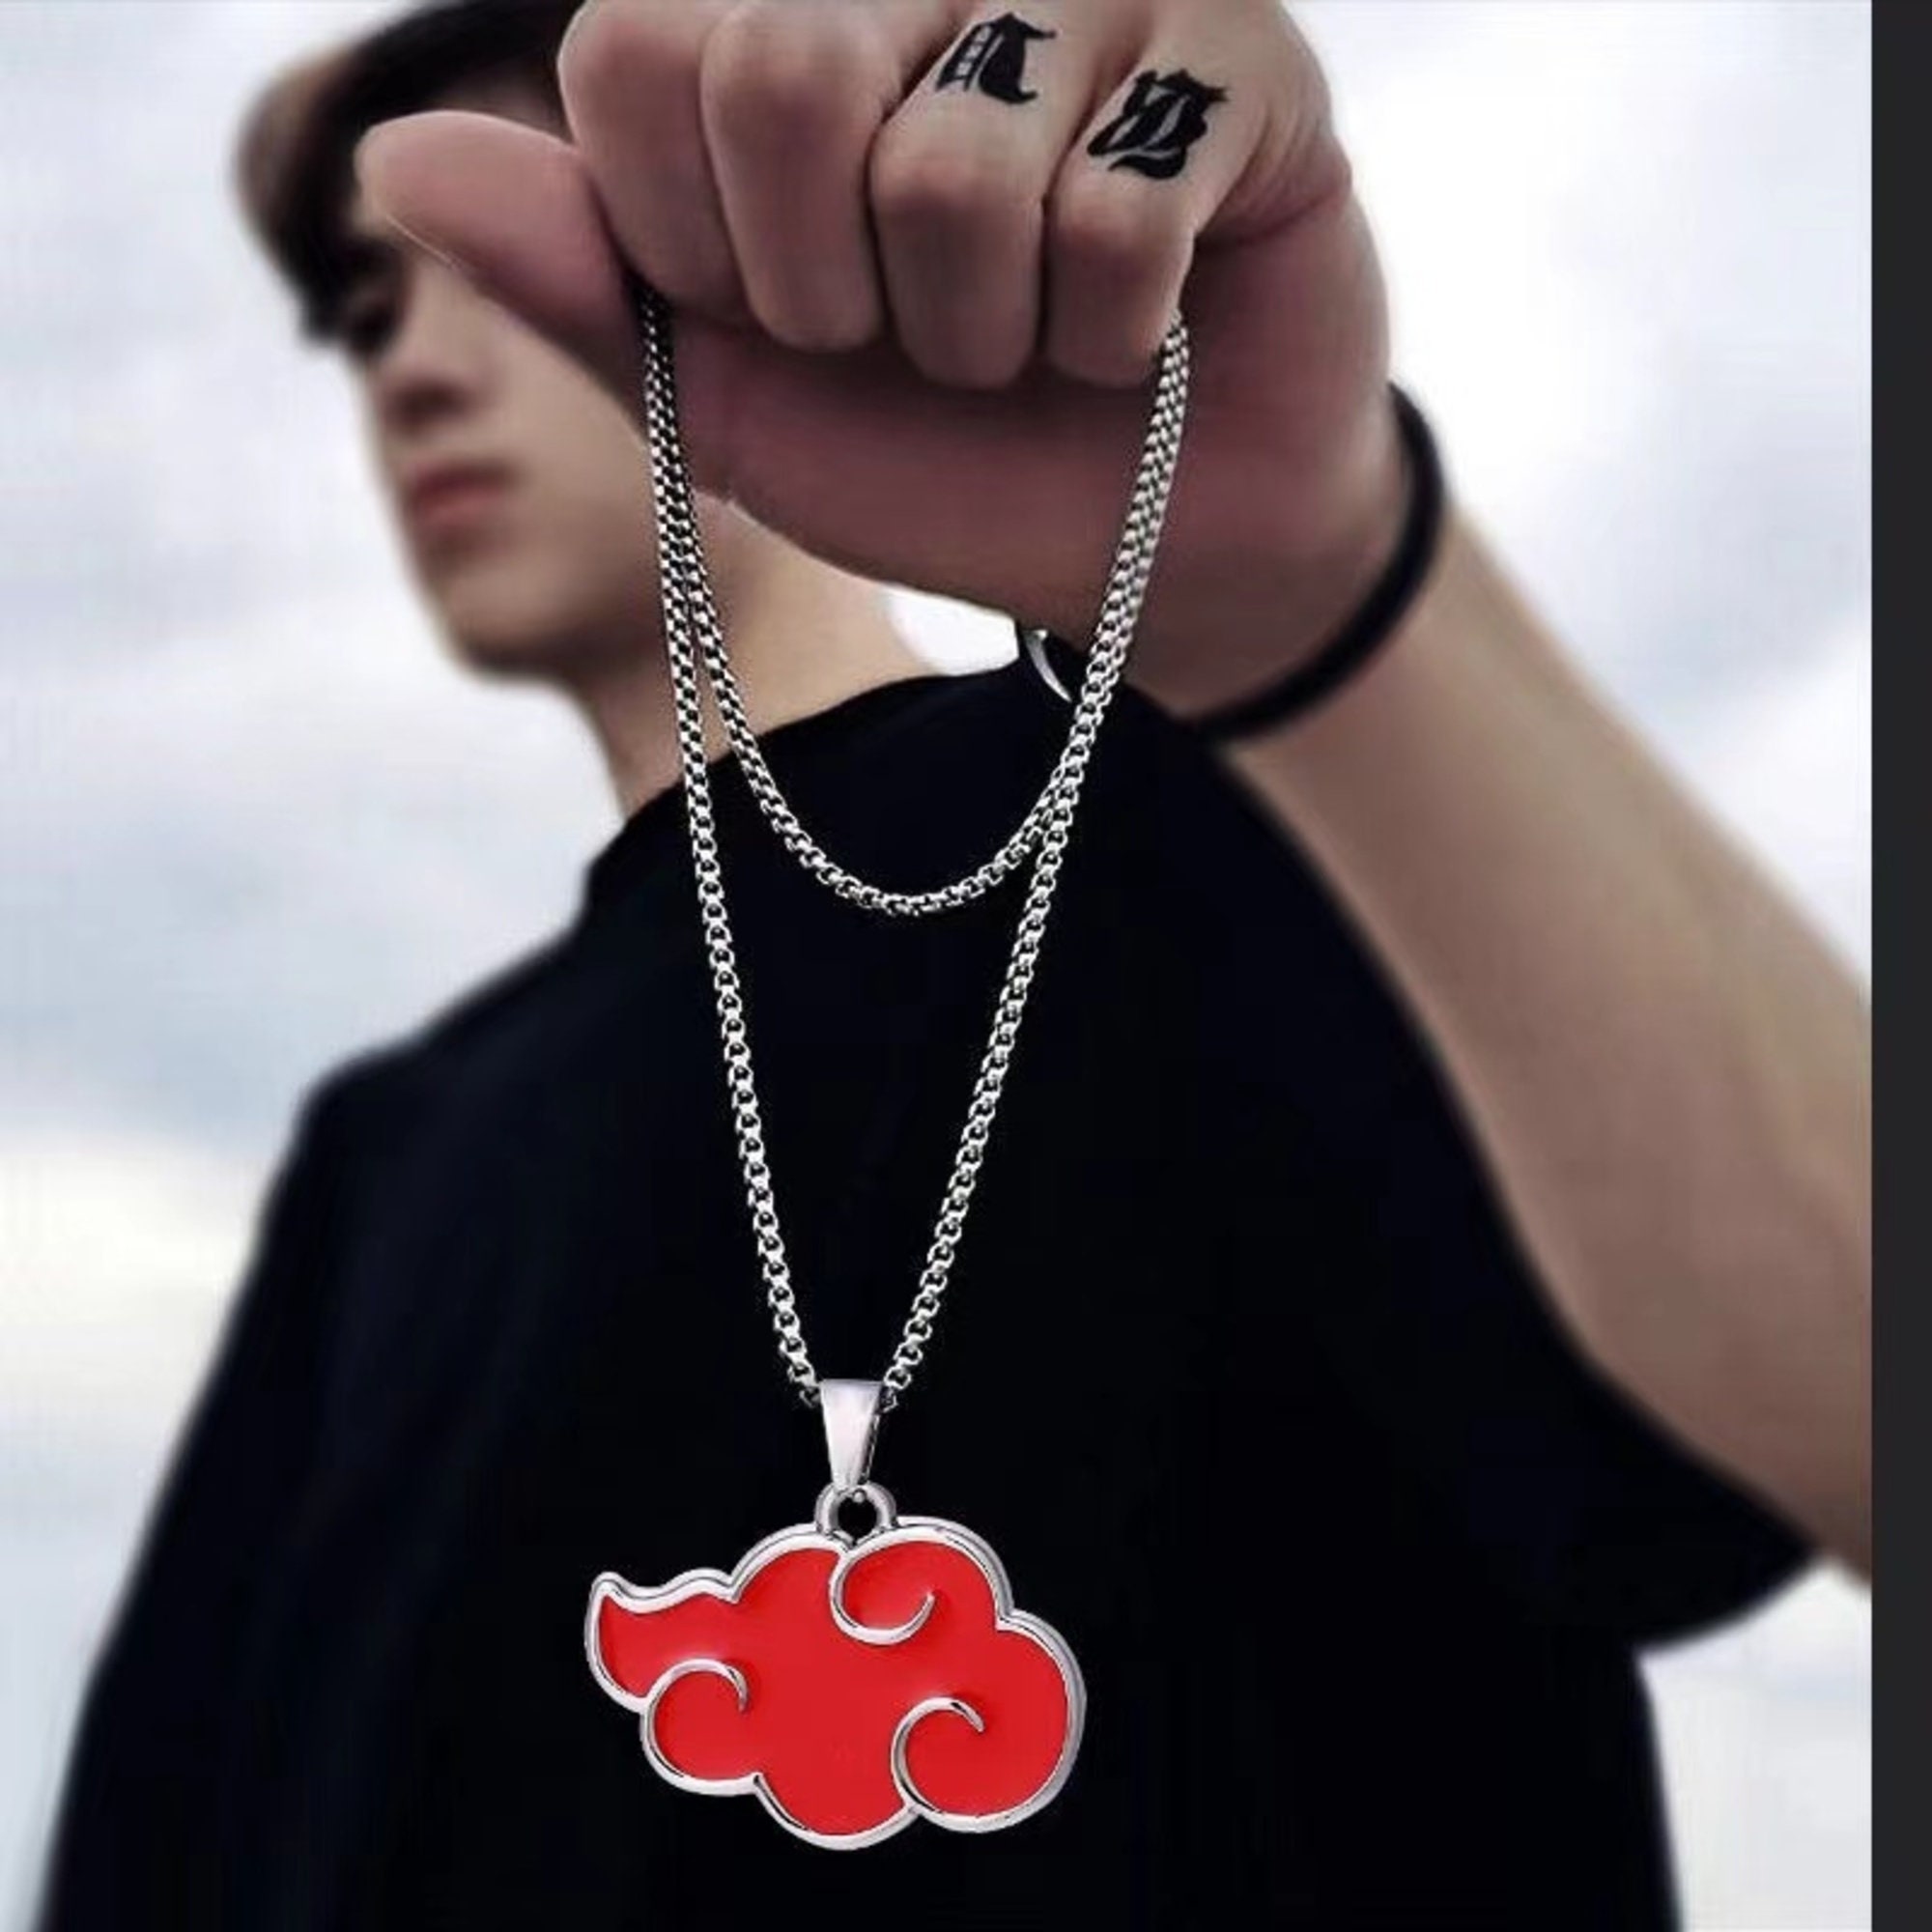 Naruto Necklaces - Etsy Canada